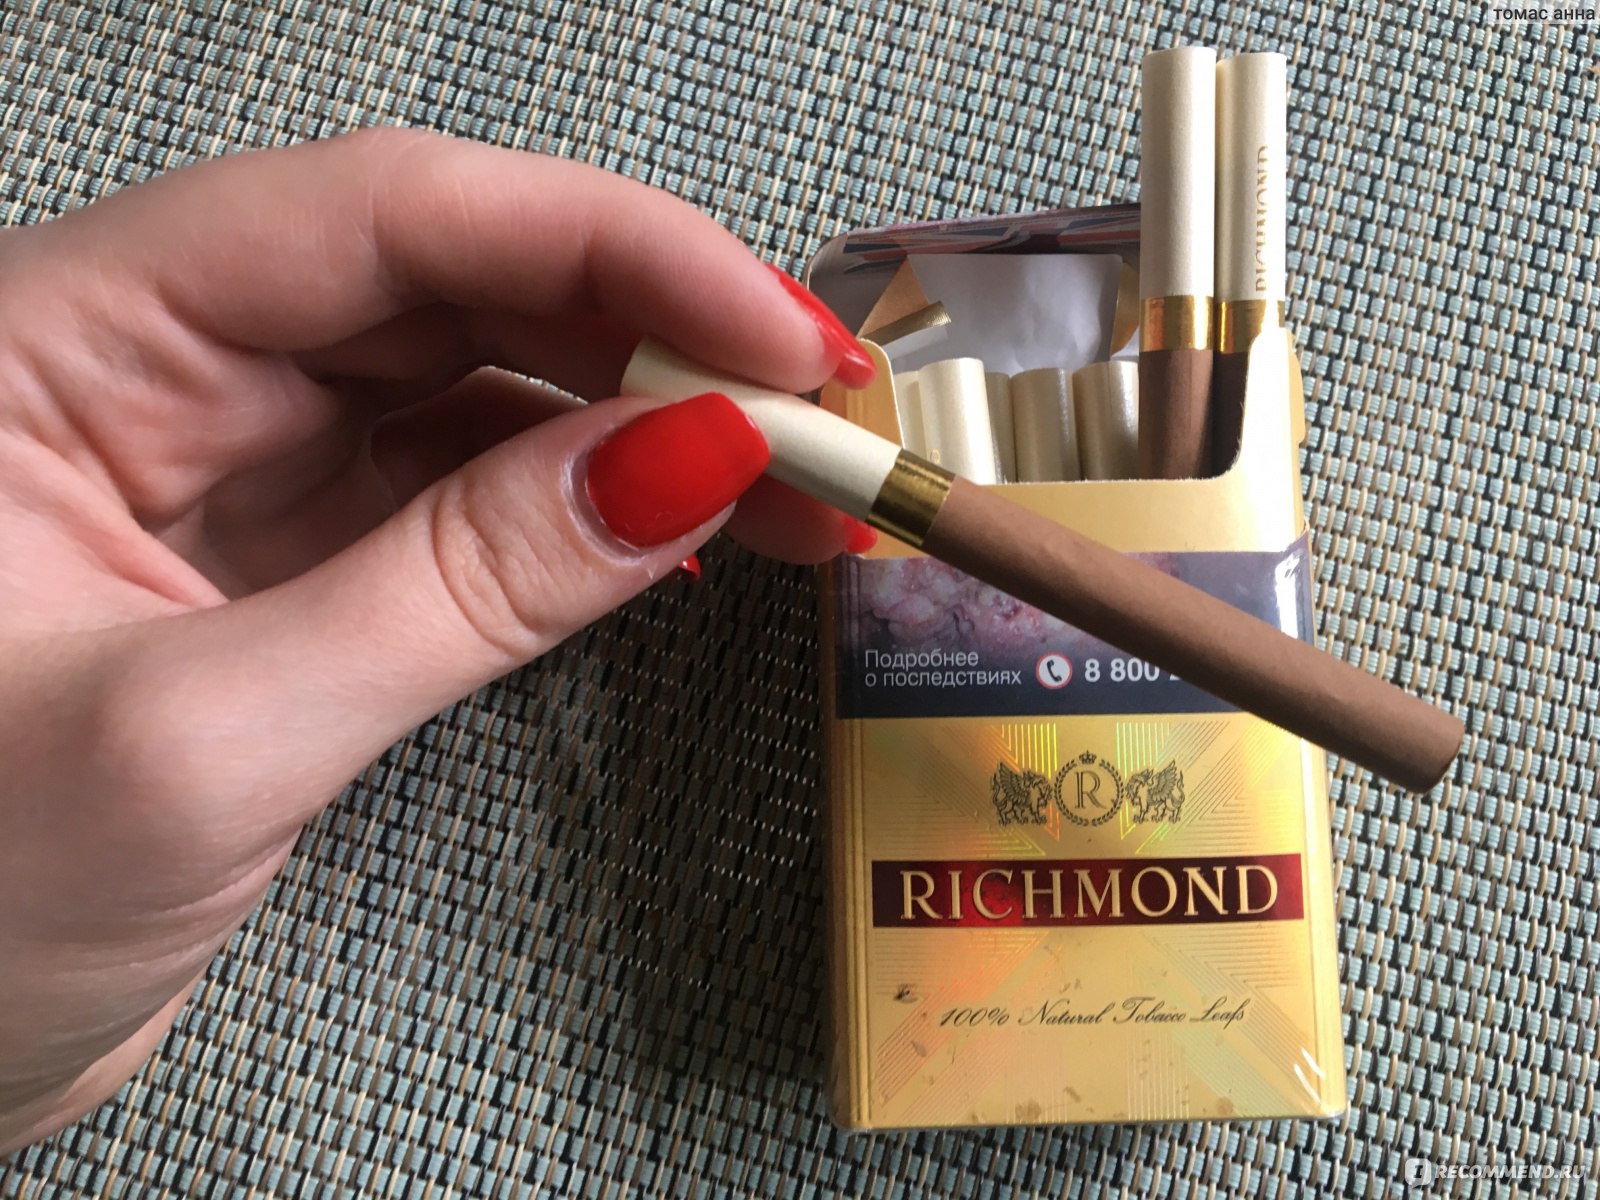 Категория: Разные продукты Бренд: Richmond Тип продукта: Сигареты.